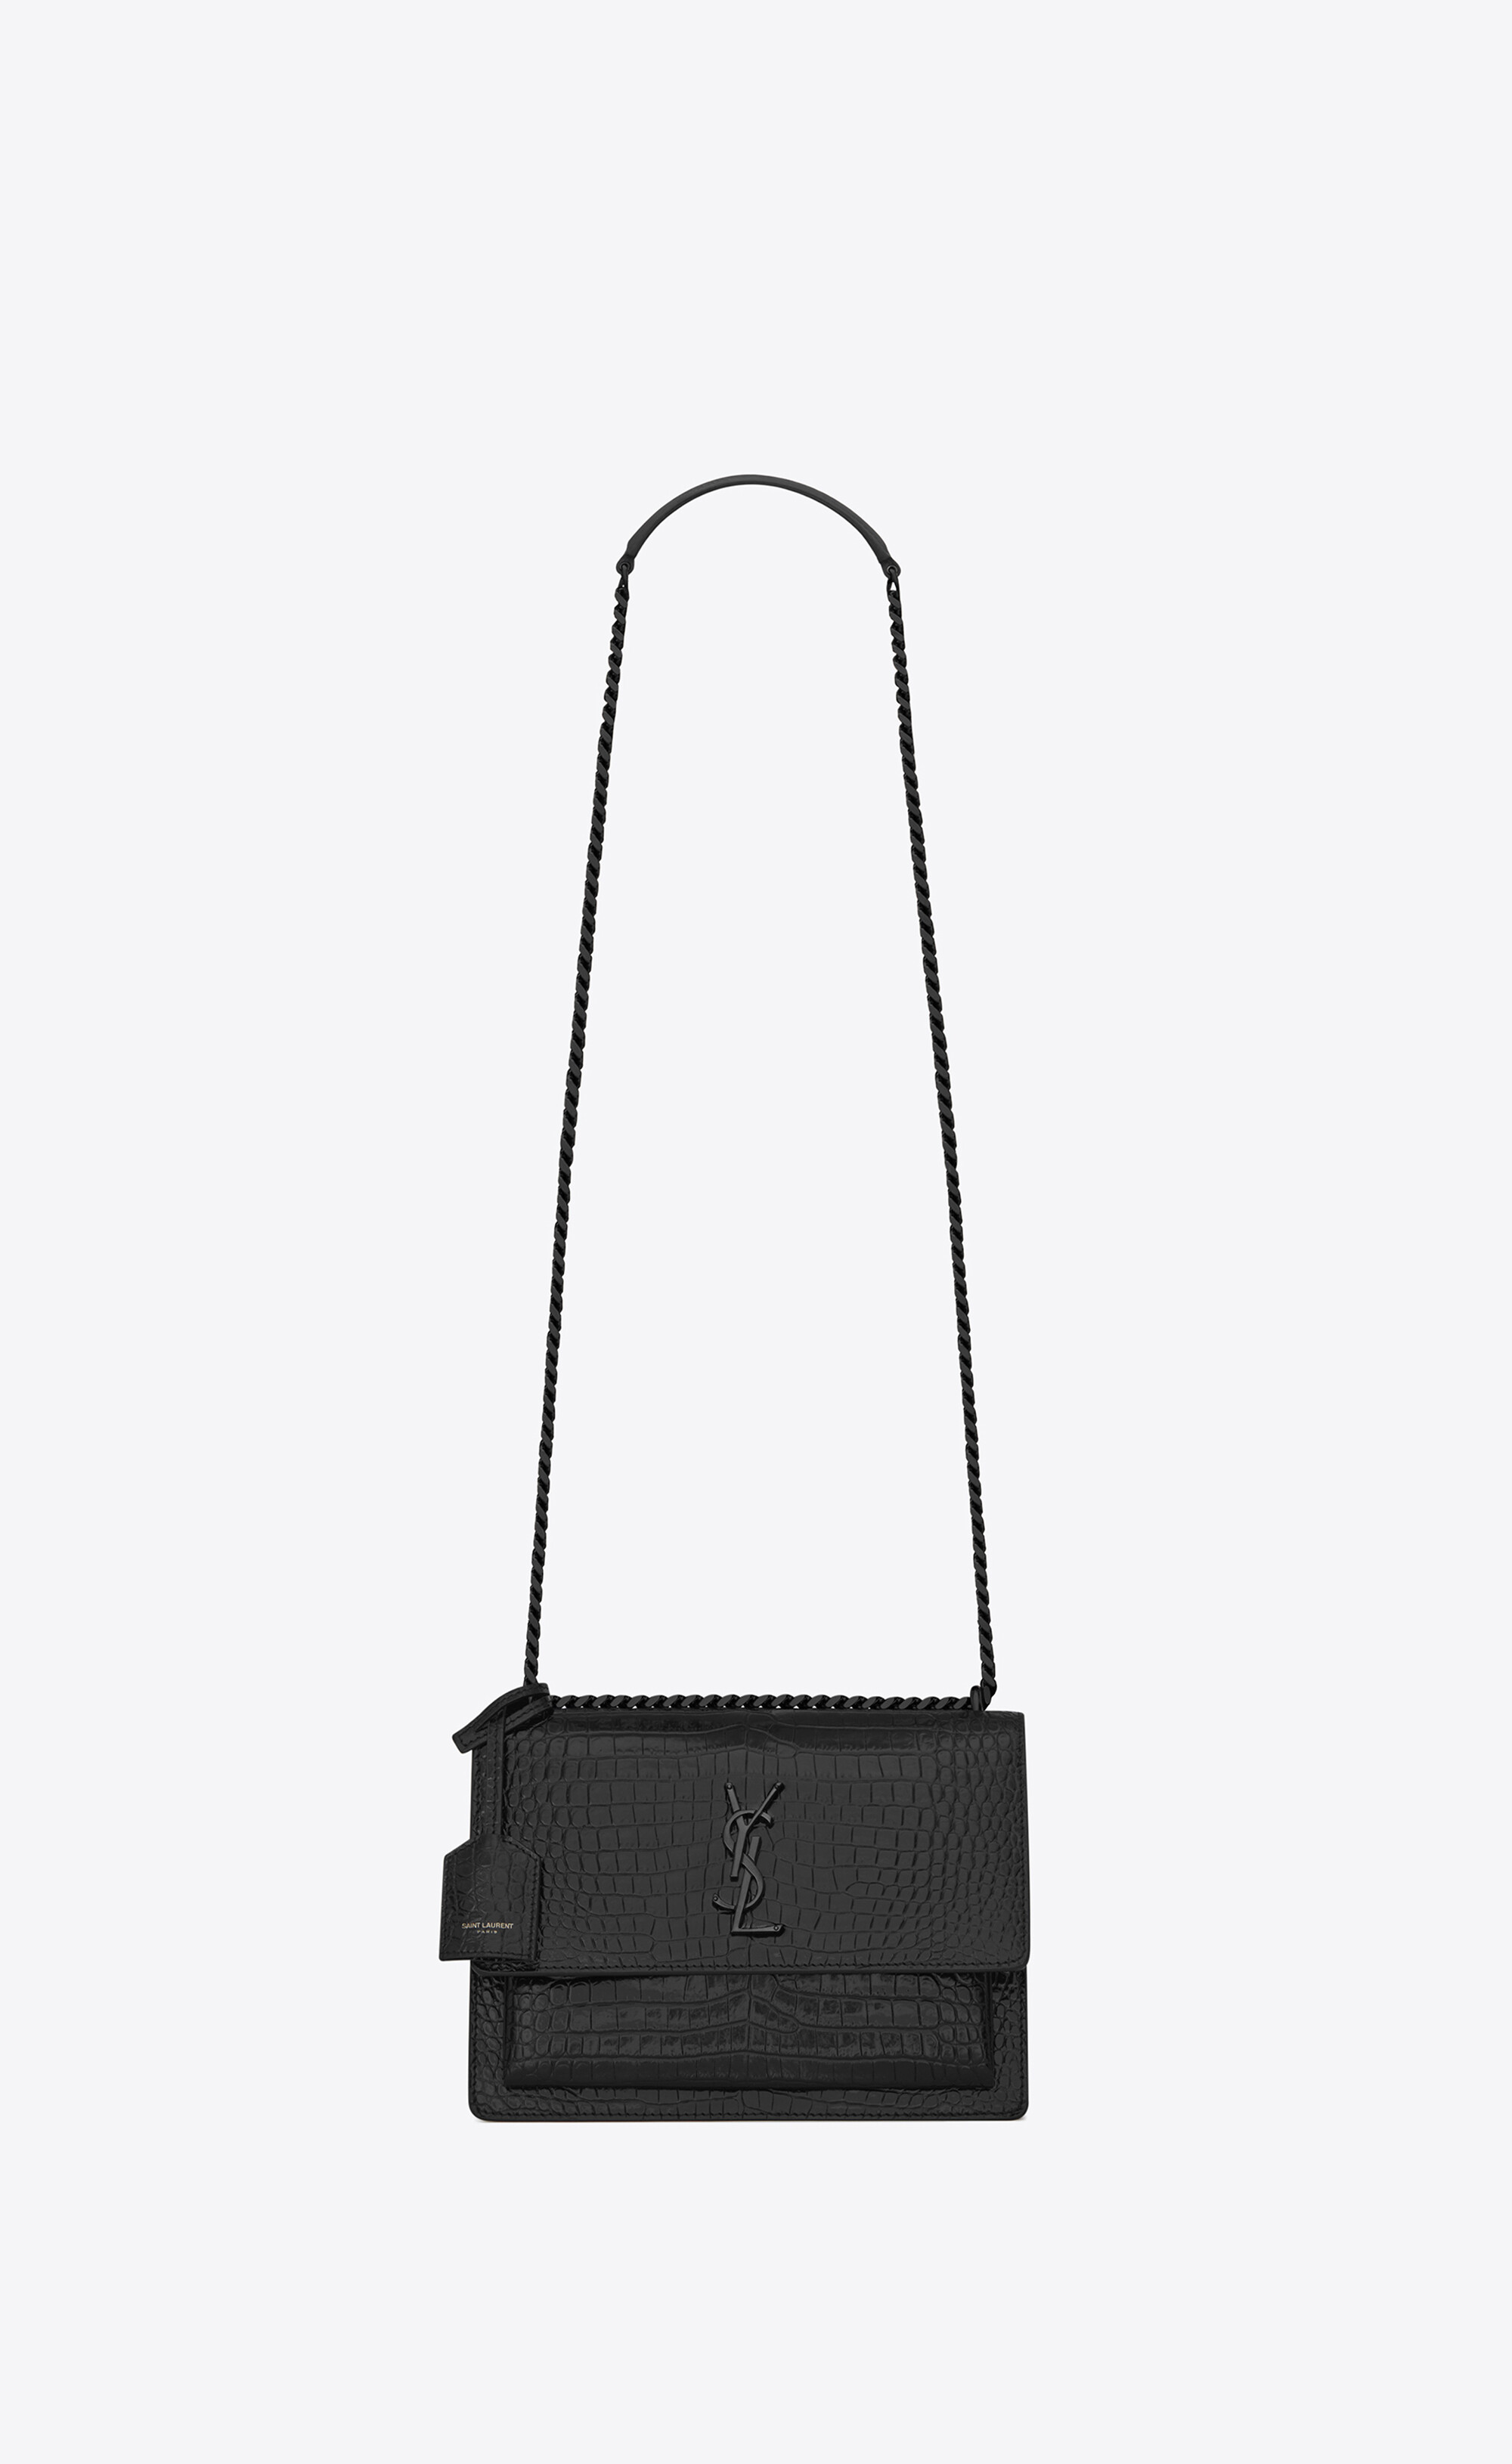 Saint Laurent - YSL Black Croc Leather Shoulder Bag | All The Dresses